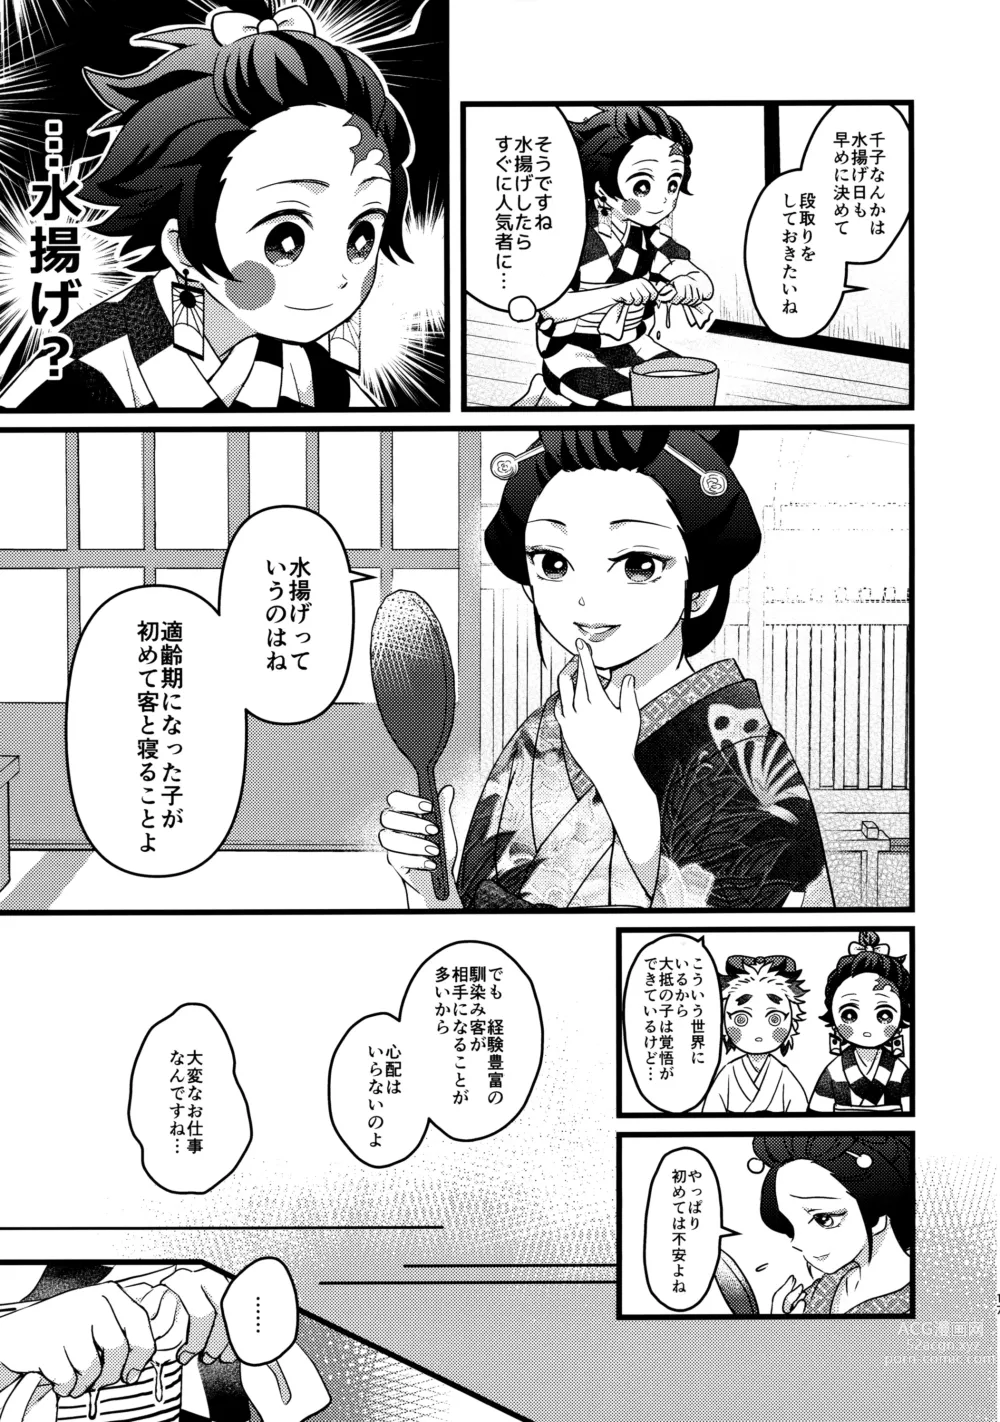 Page 16 of doujinshi Ore-tachi Minarai nan desu ga!?